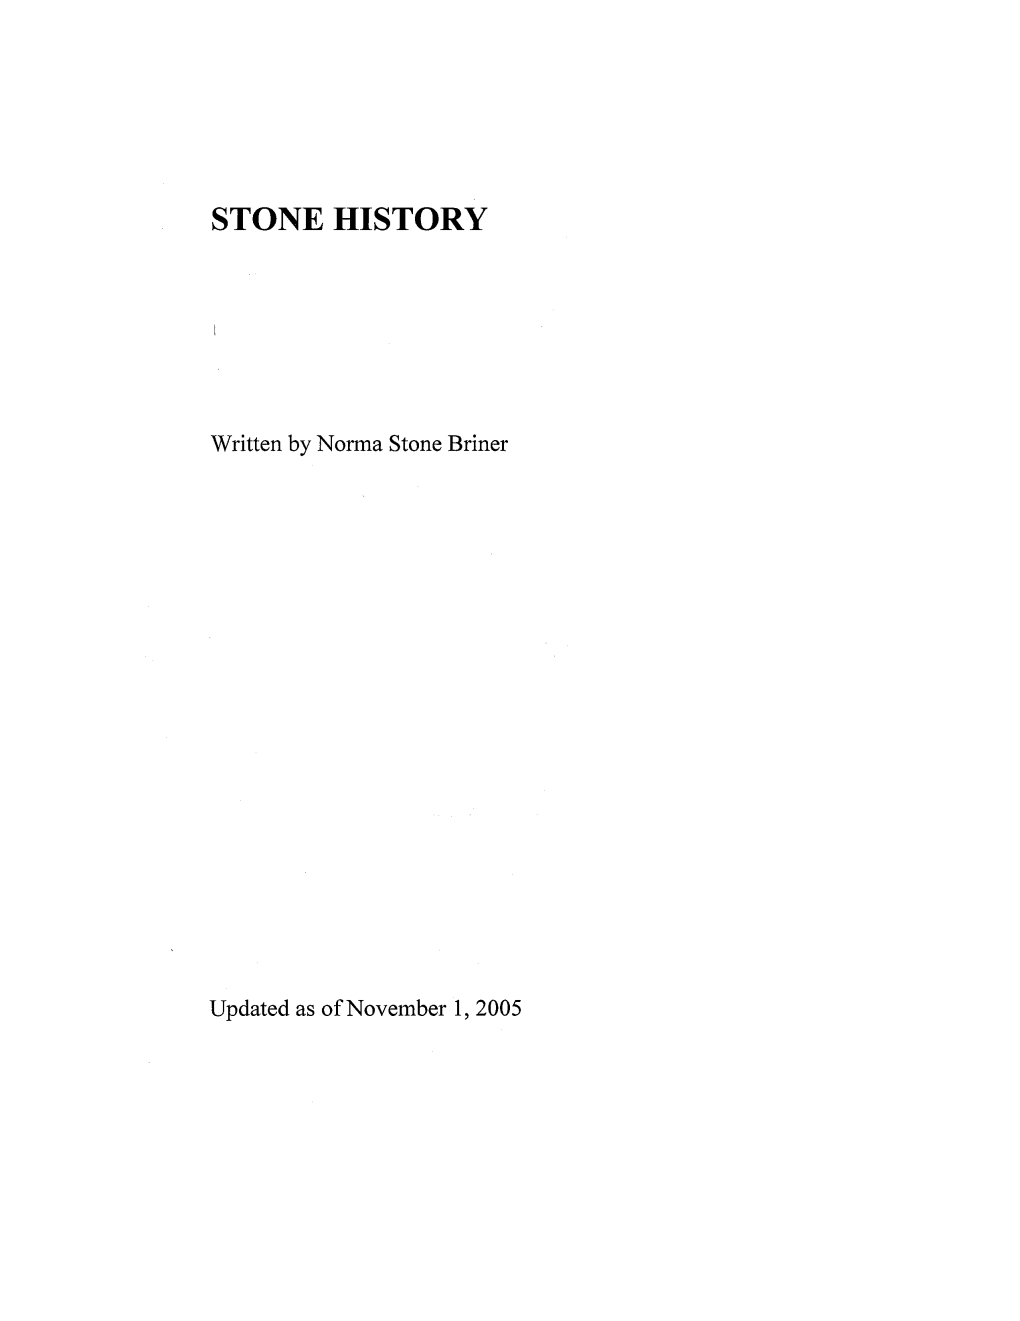 Stone History